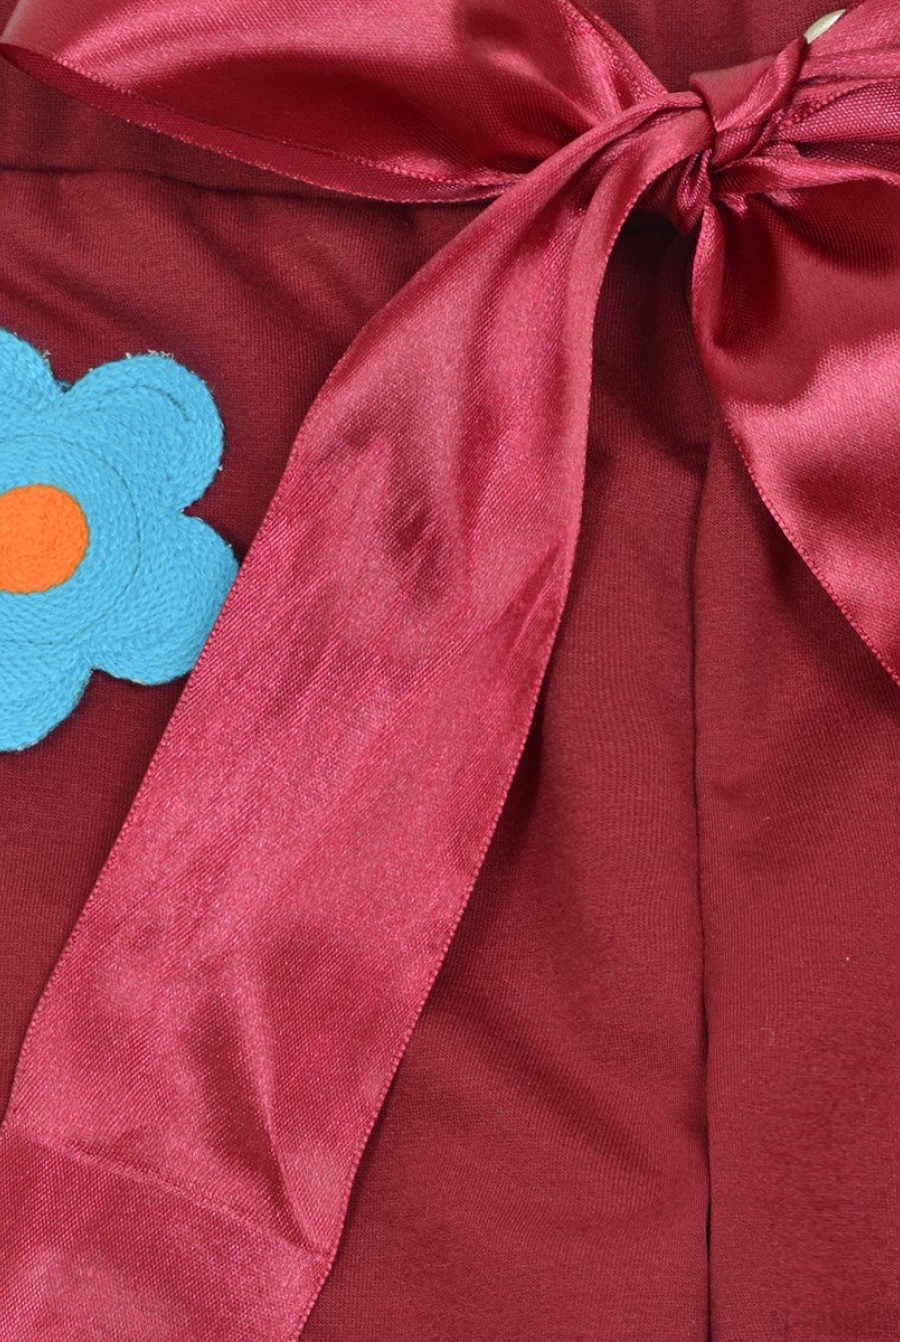 Яркие спортивные штаны с цветочными аппликациями- Фото 3